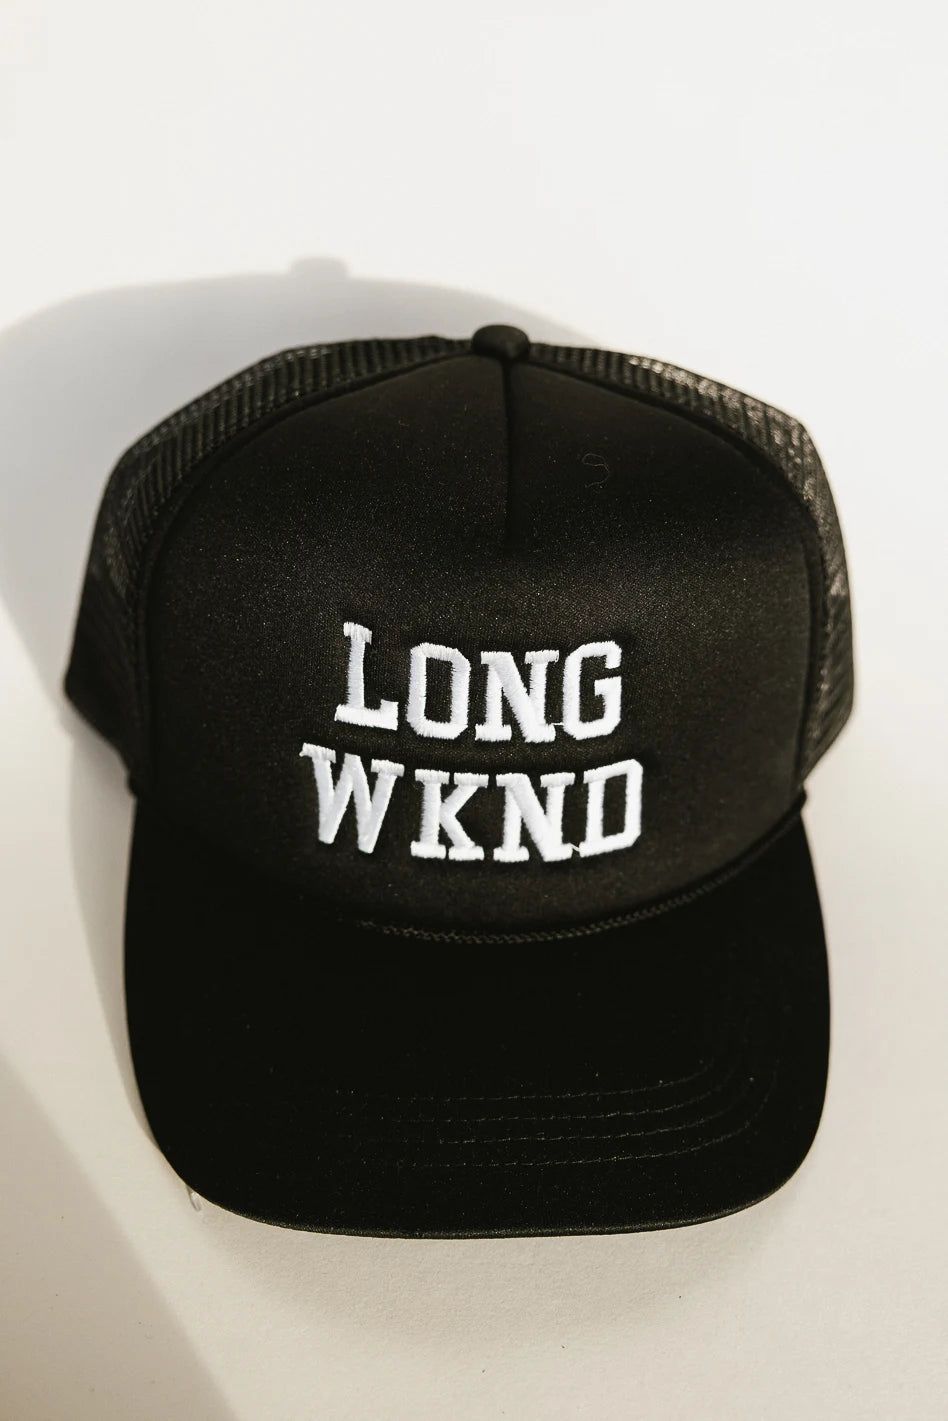 Long Weekend Trucker Hat in Black | Bohme